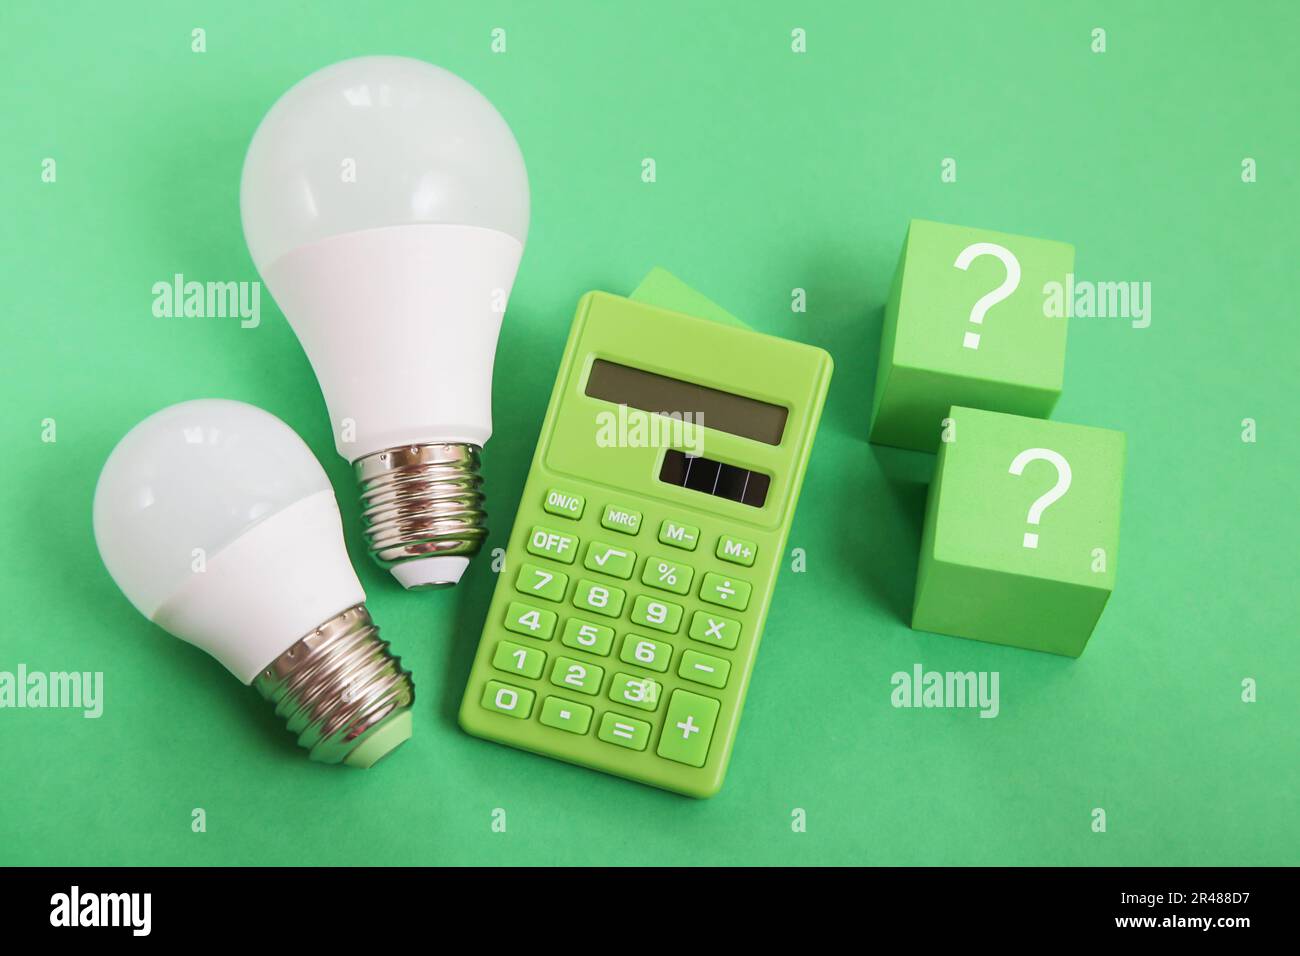 Lampadina, calcolatrice verde, punto interrogativo su sfondo verde. Concorrenza concettuale per il mercato dell'energia verde Foto Stock